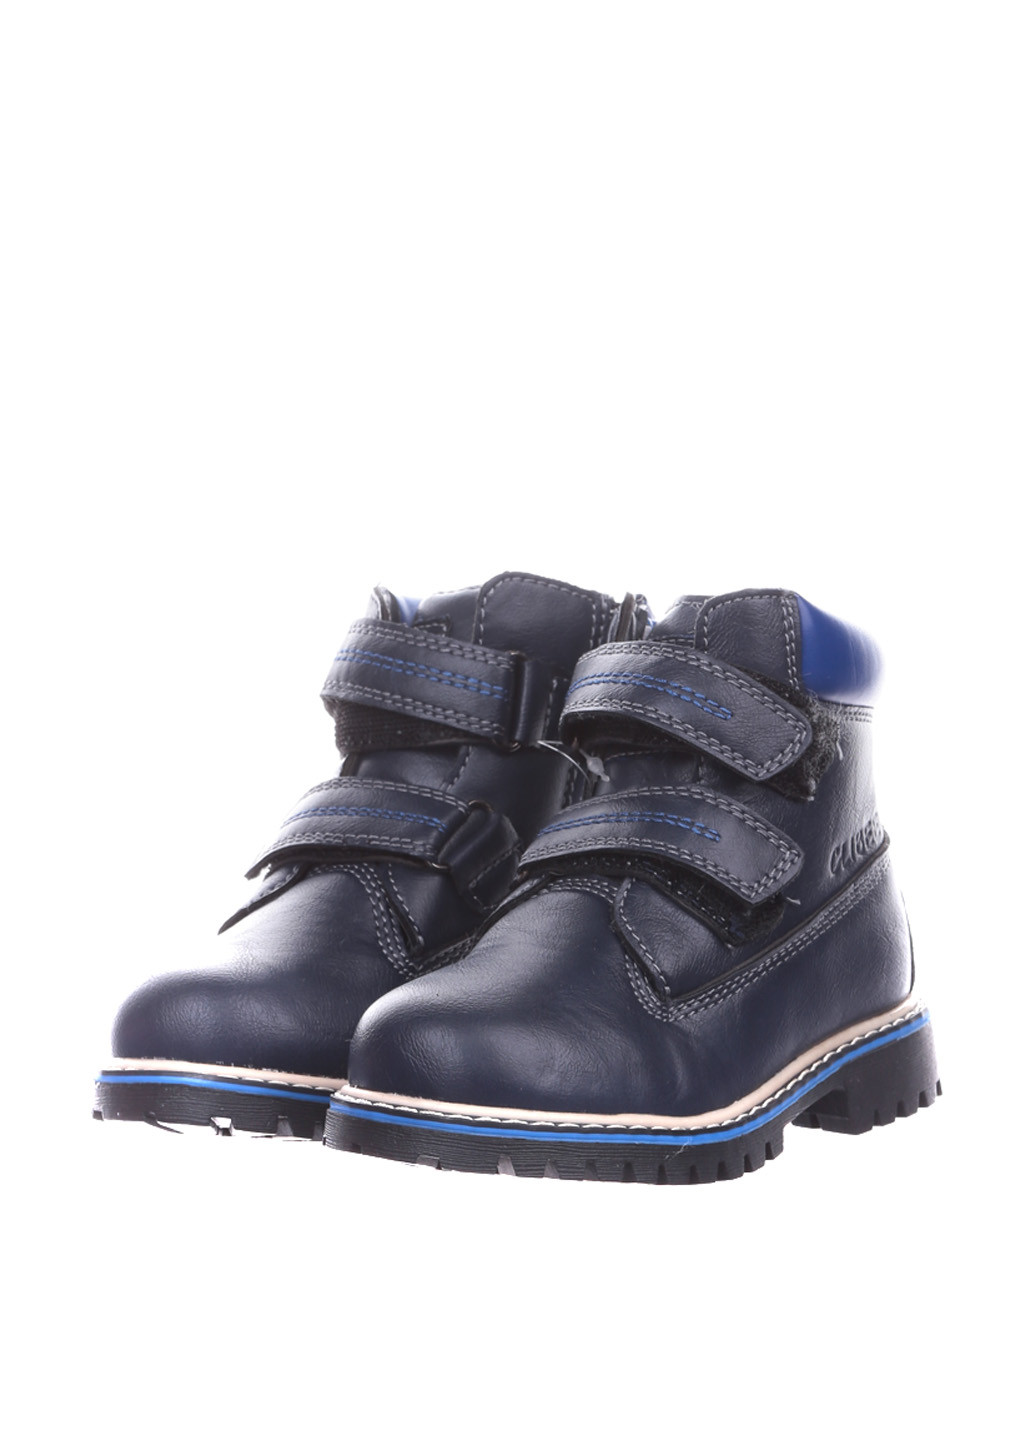 Синие спортивные зимние ботинки Clibee